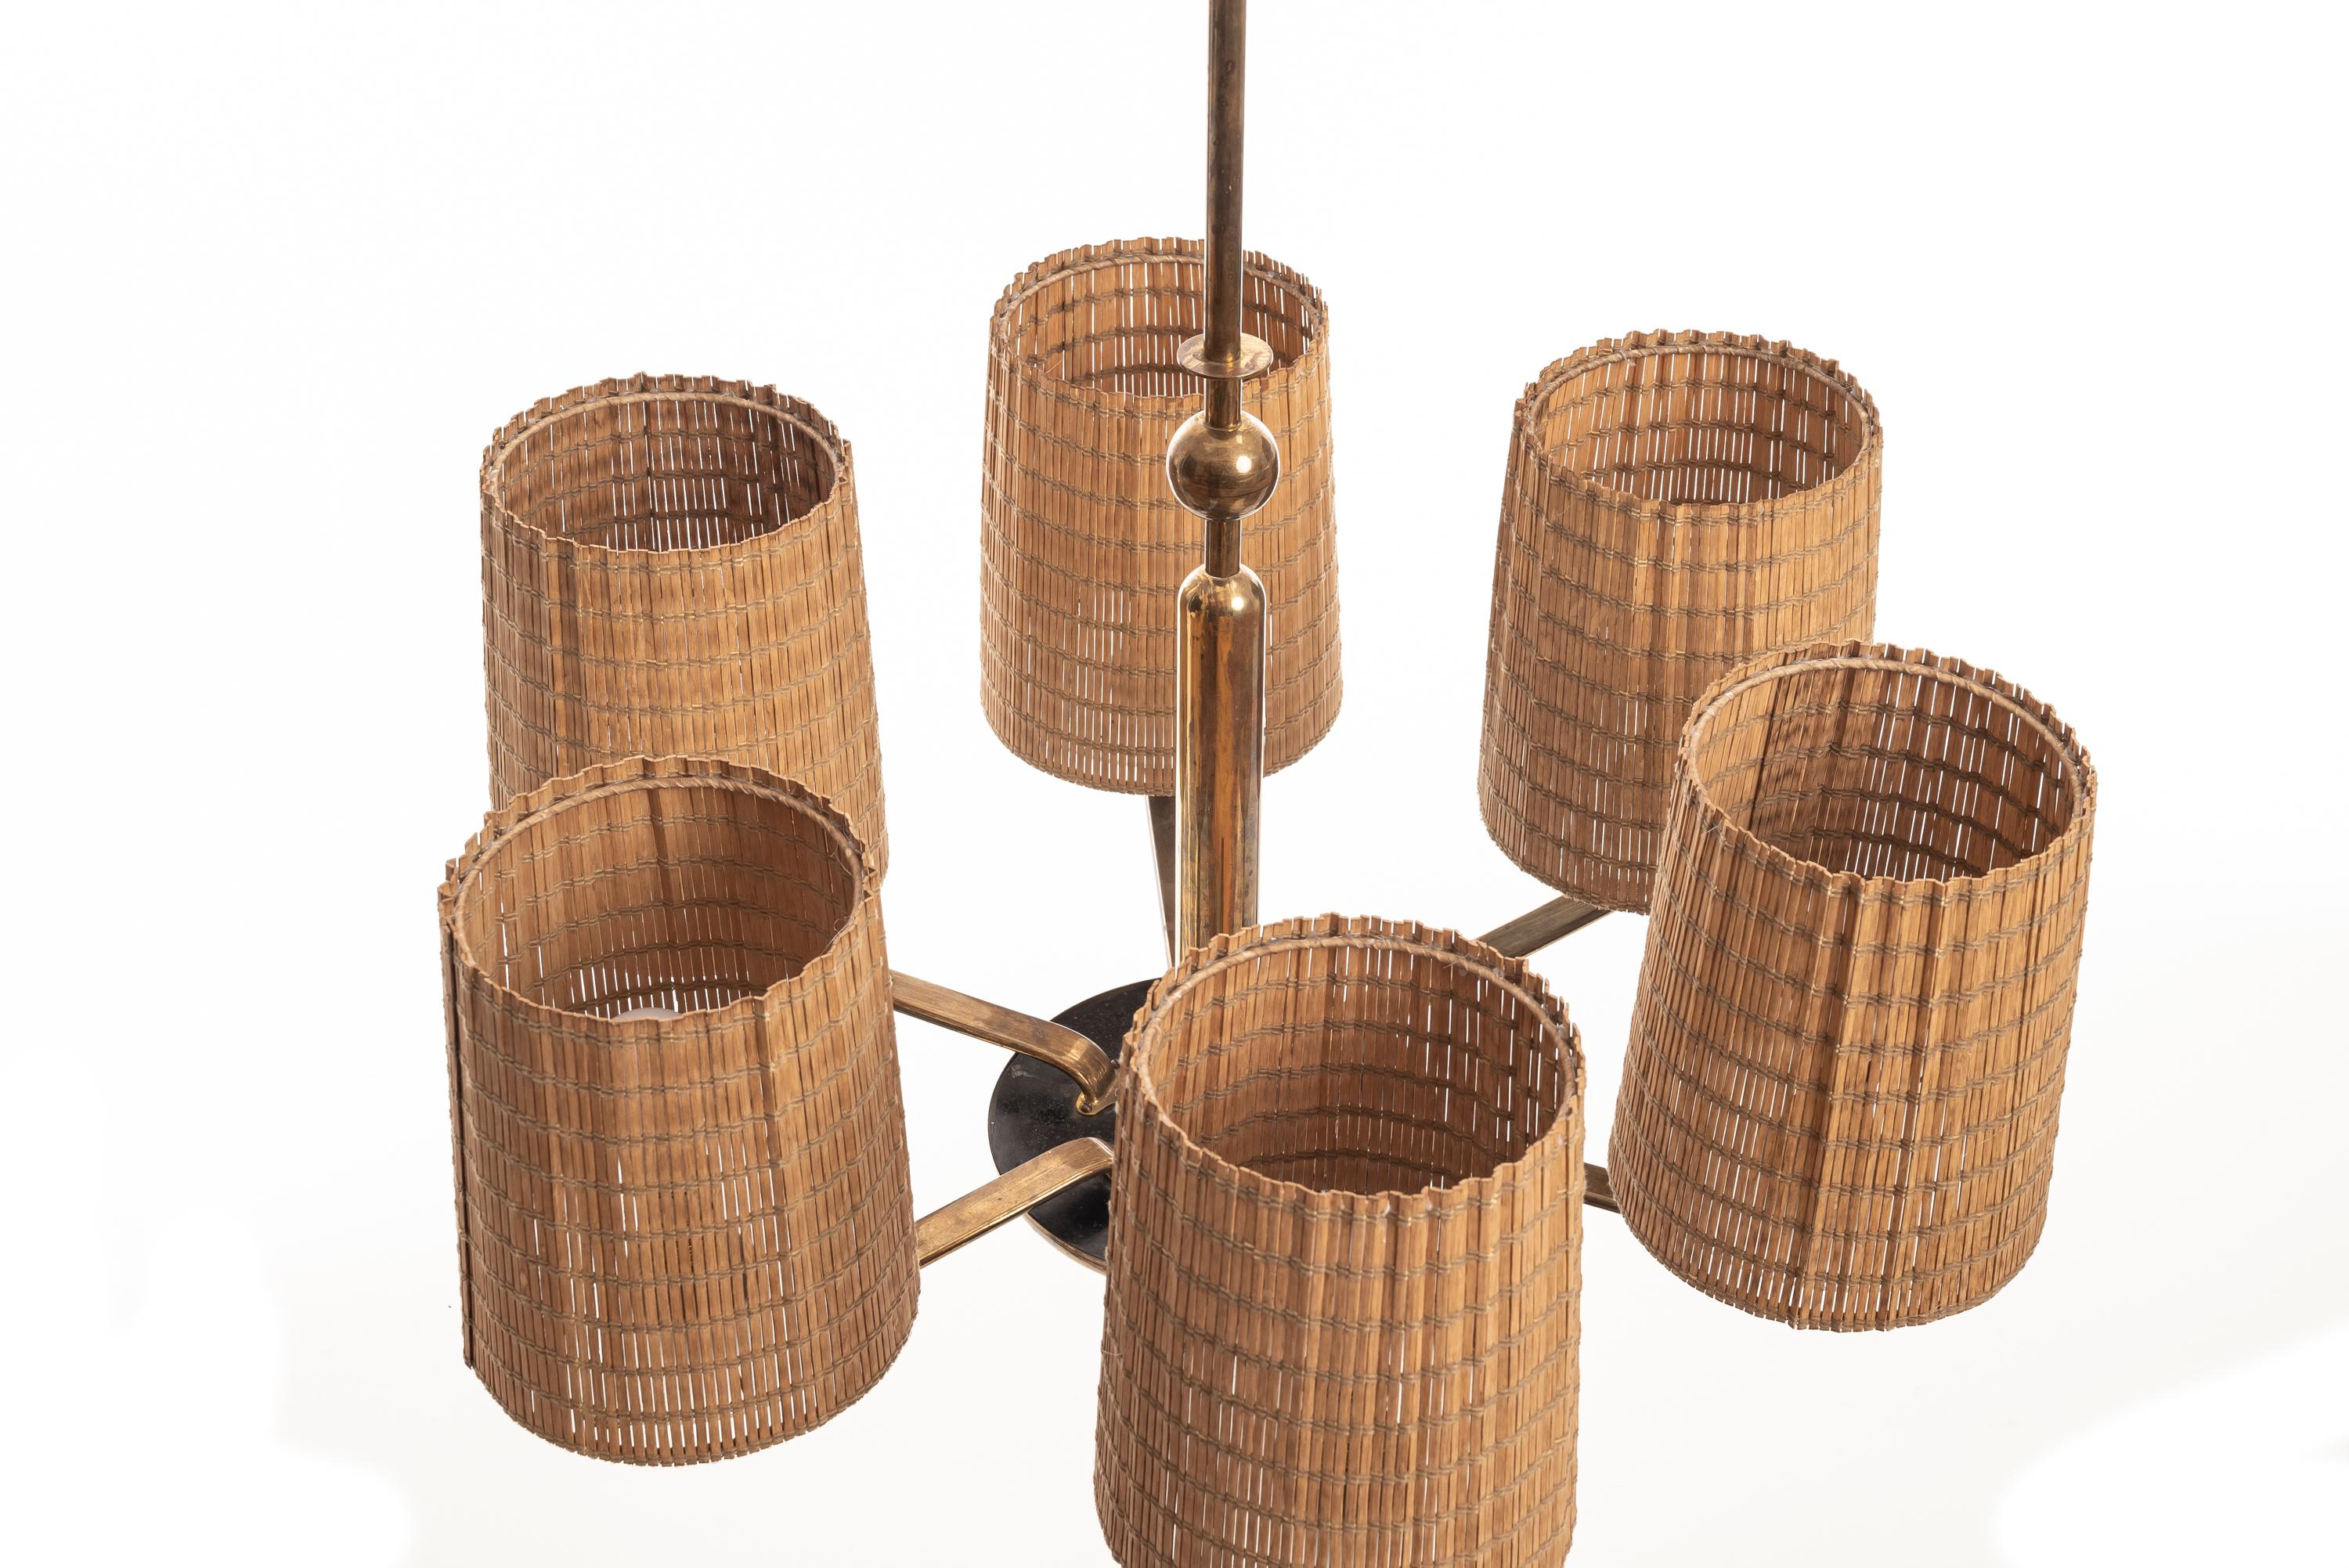 Große Messing-Hängeleuchte von Paavo Tynell, Taito als Hersteller, Schirme sind neuer, aus Holz.